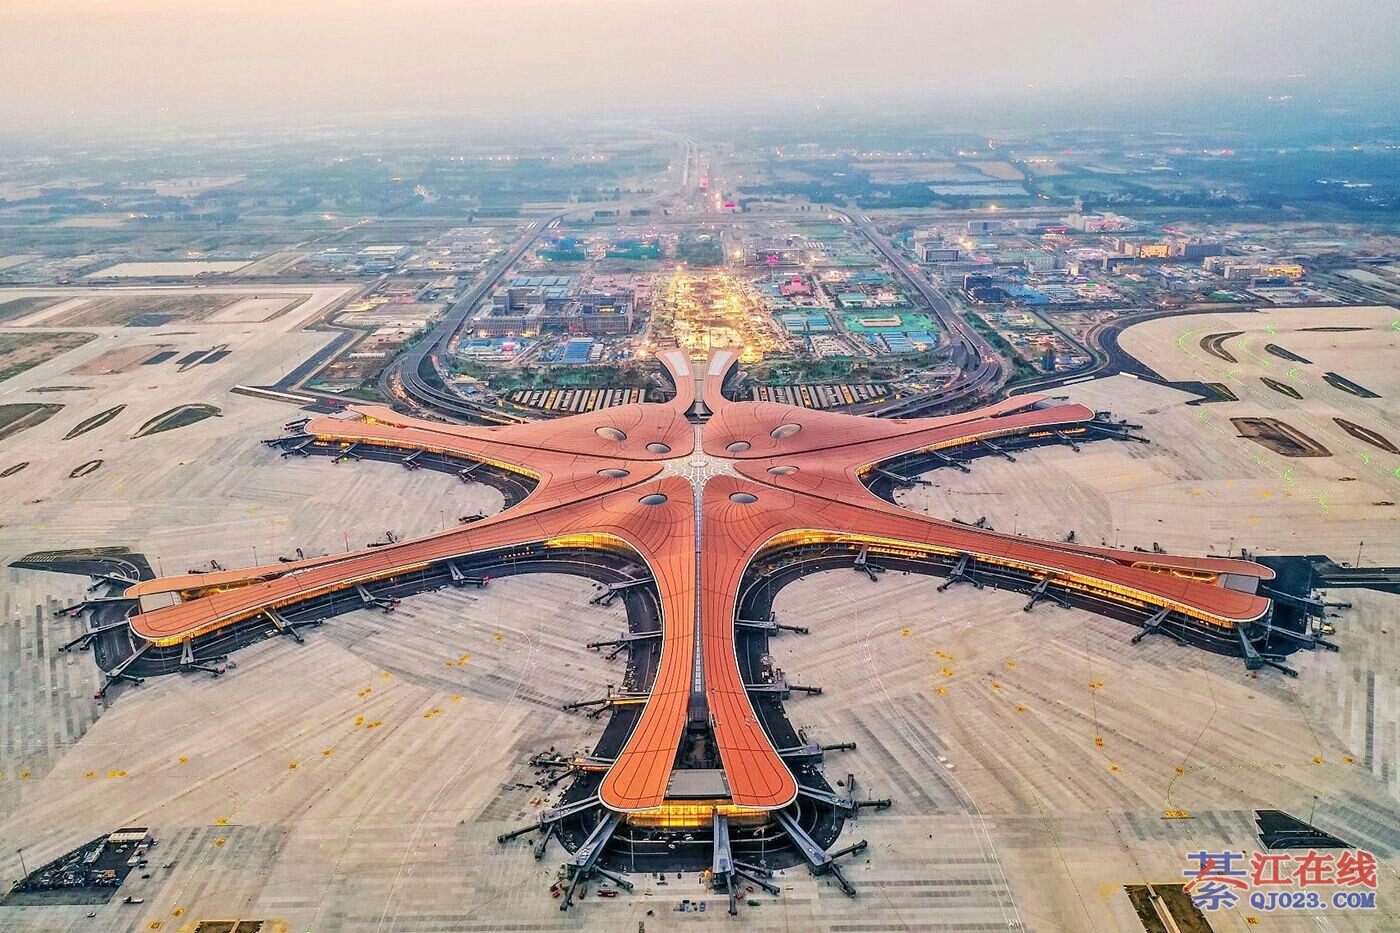 拟定新机场名称为"重庆正兴国际机场". 綦江该加油了!